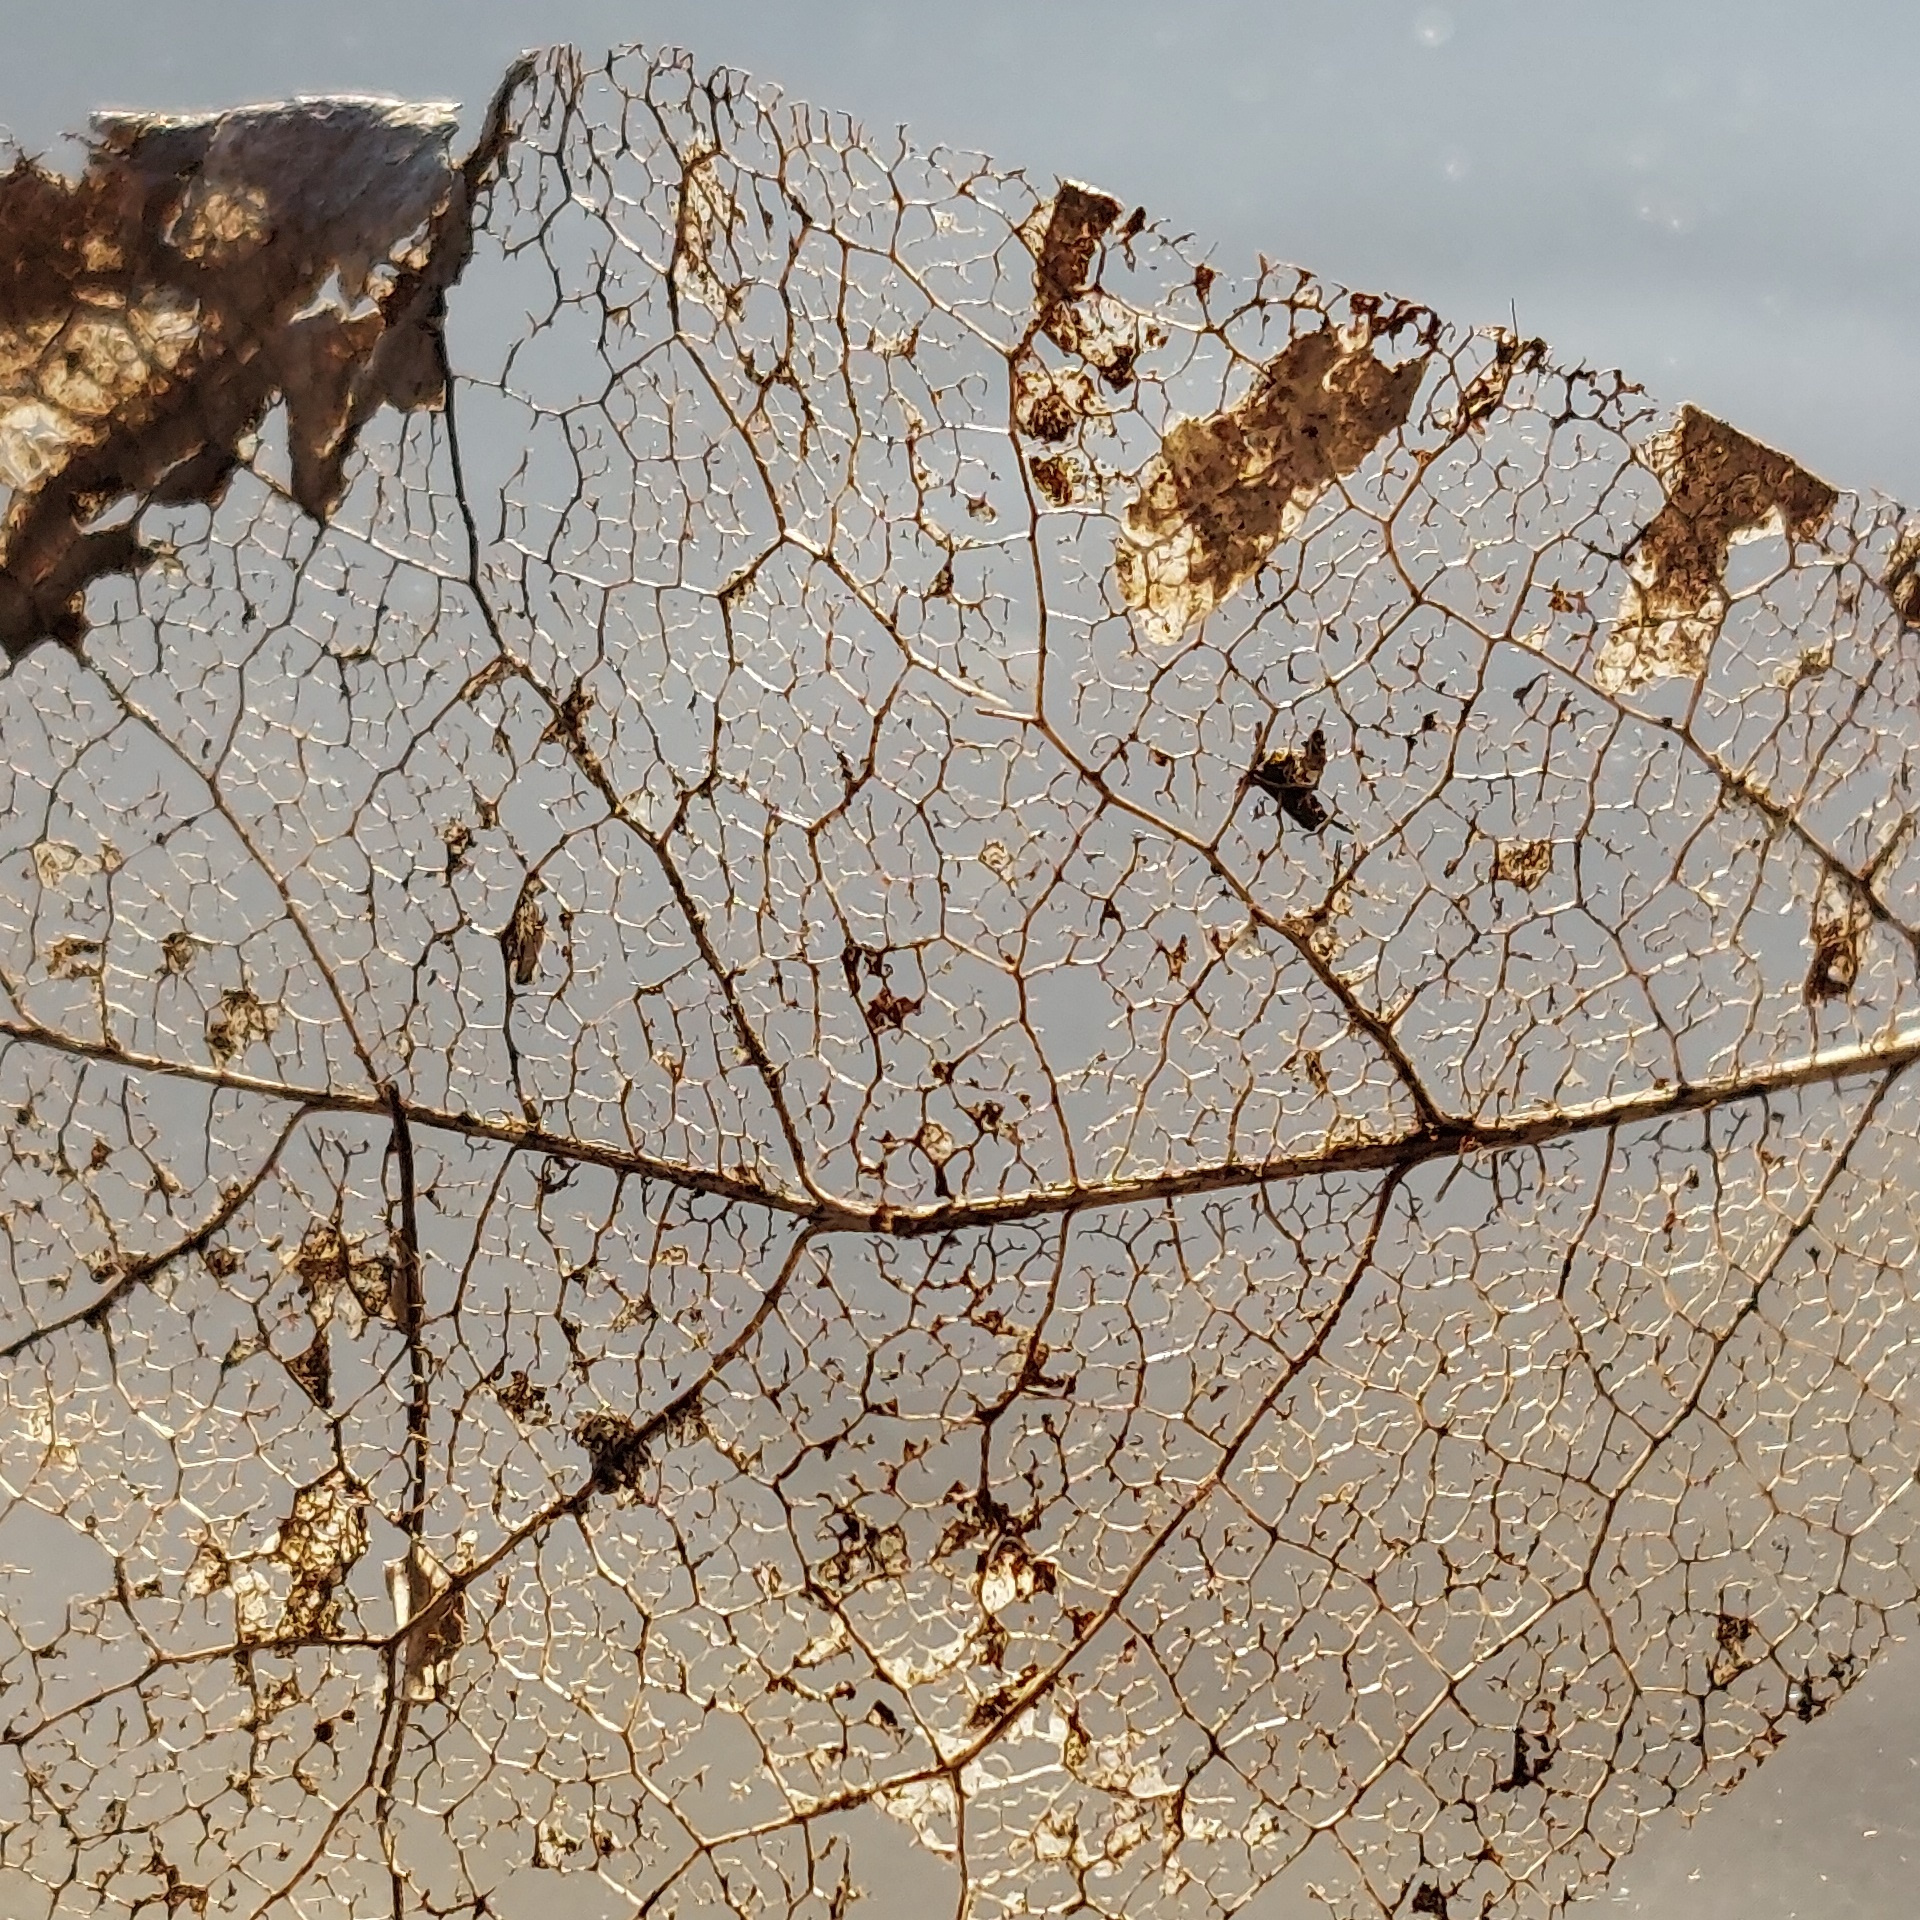 Detailfoto von Blattrispen eines Herbstblattes, vielfach durchbrochen